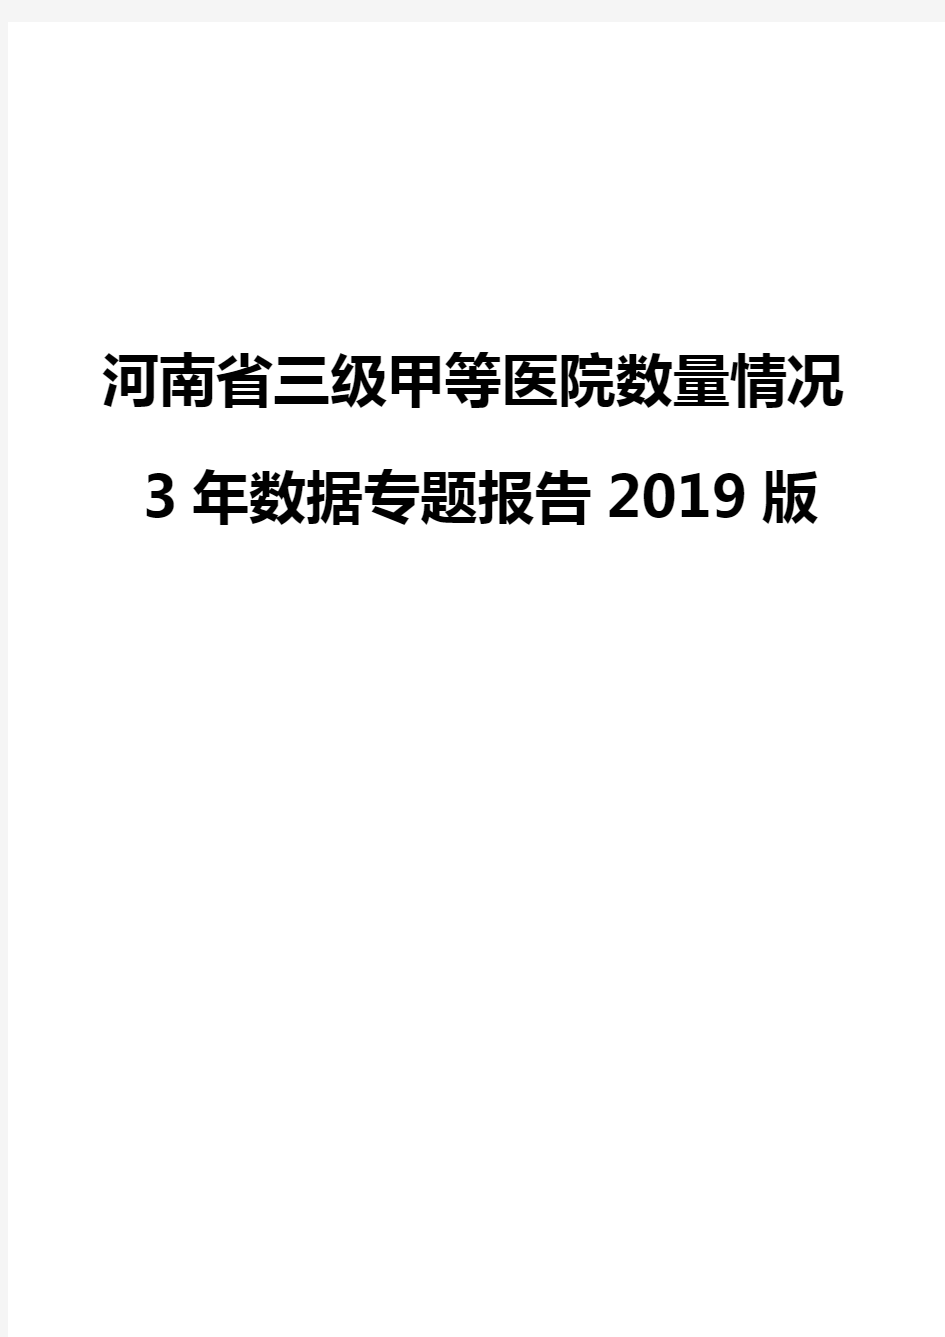 河南省三级甲等医院数量情况3年数据专题报告2019版